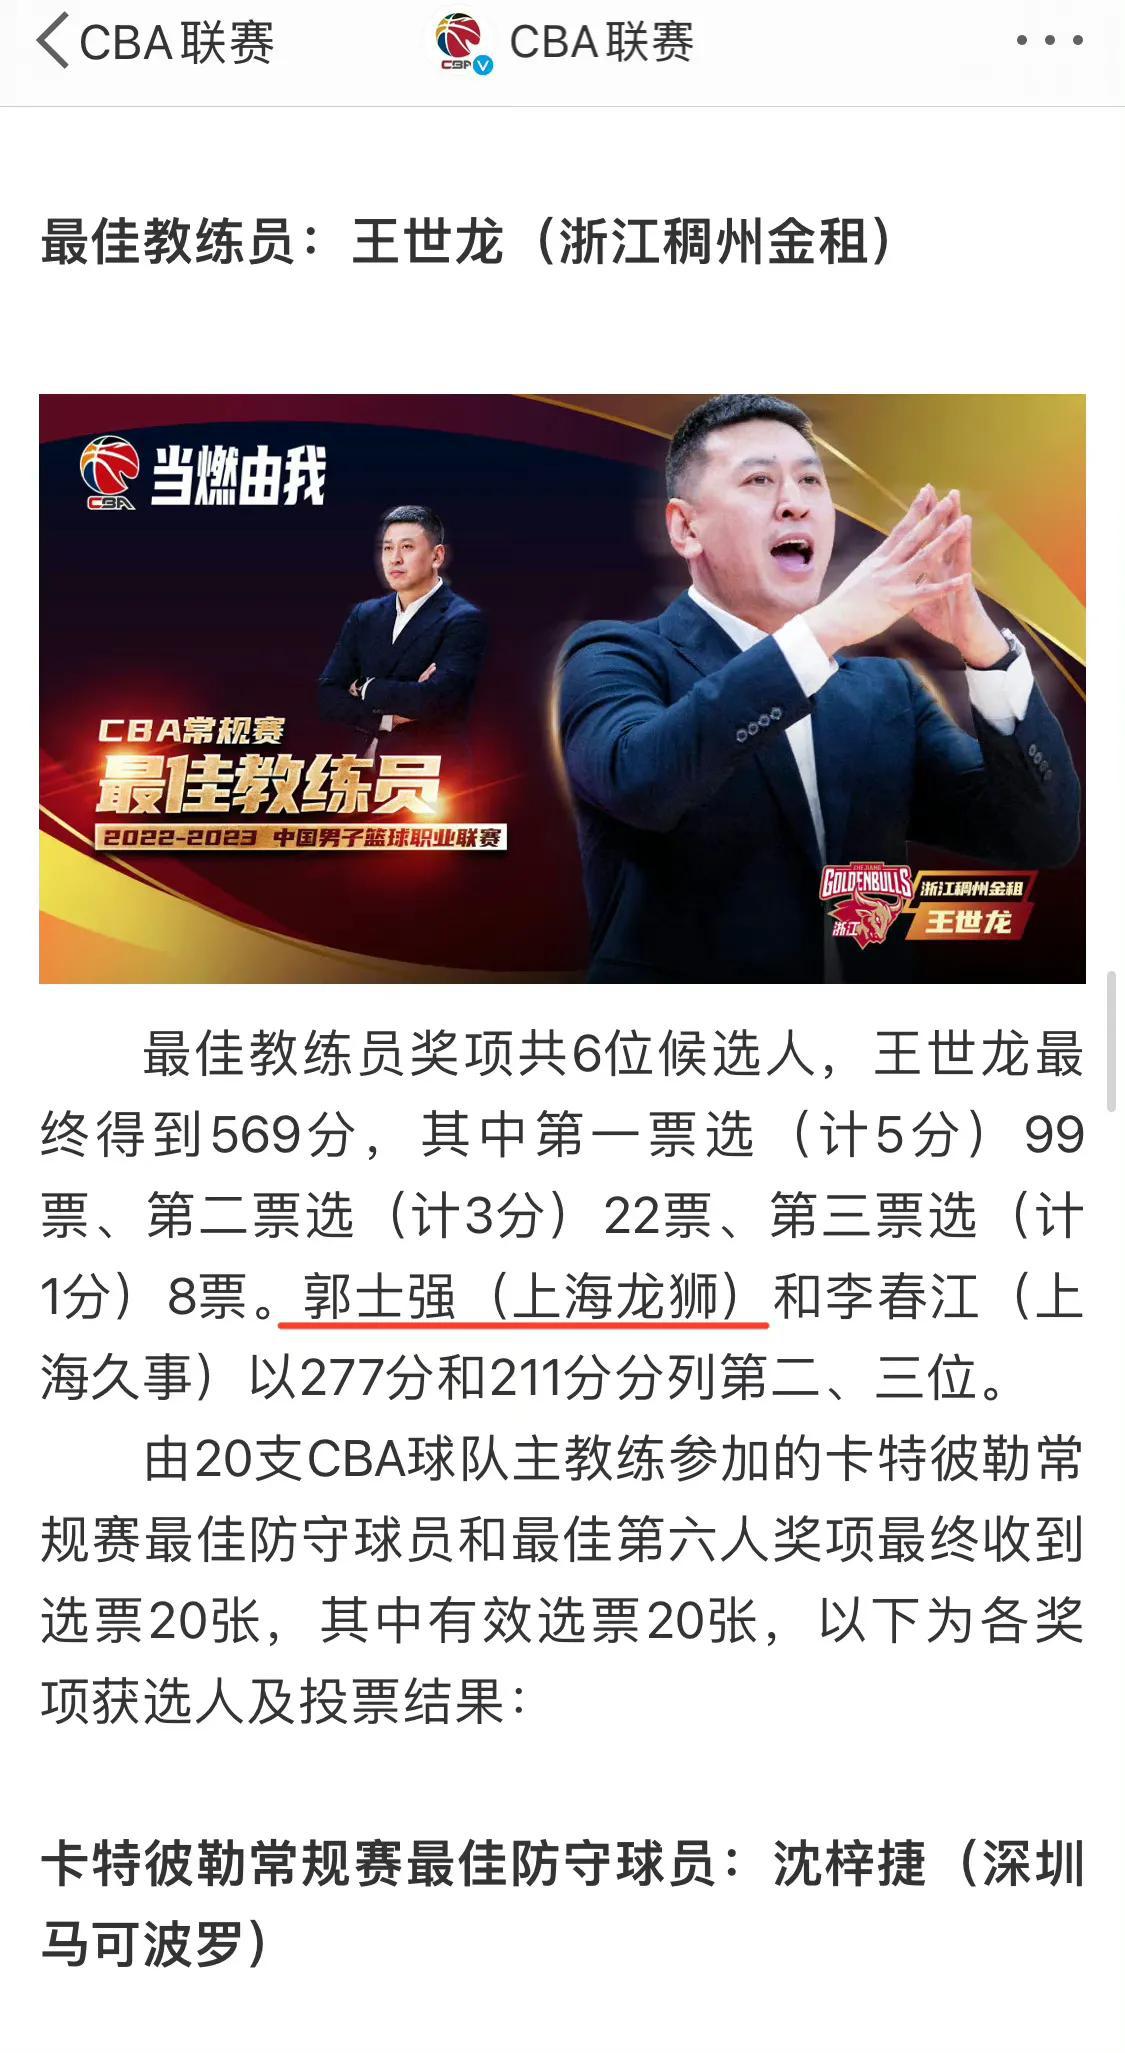 争议！CBA颁奖现重大低级错误，球迷怒斥：太业余了，这就是中国职业篮球联赛？

(1)